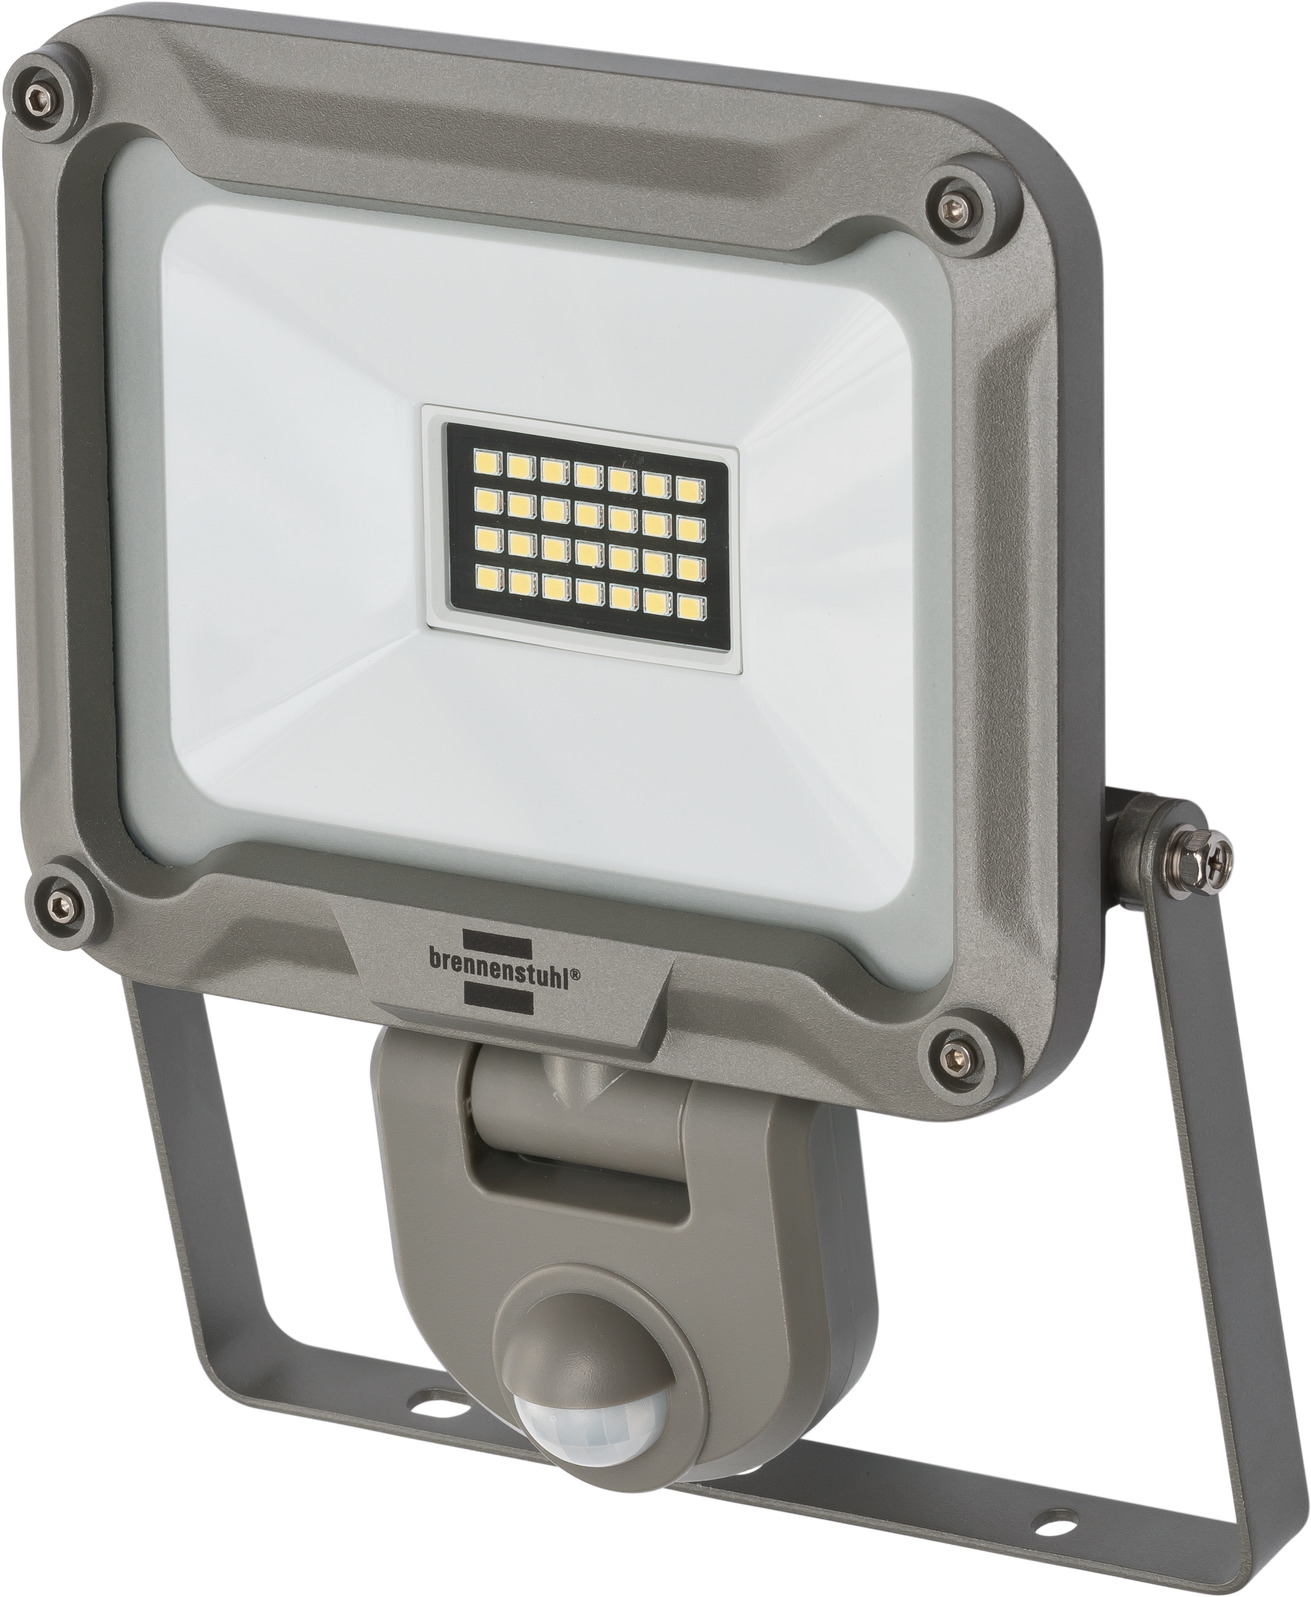 LED Strahler JARO 1950lm, IP54 19,7W, brennenstuhl® 2050 | mit P Infrarot-Bewegungsmelder